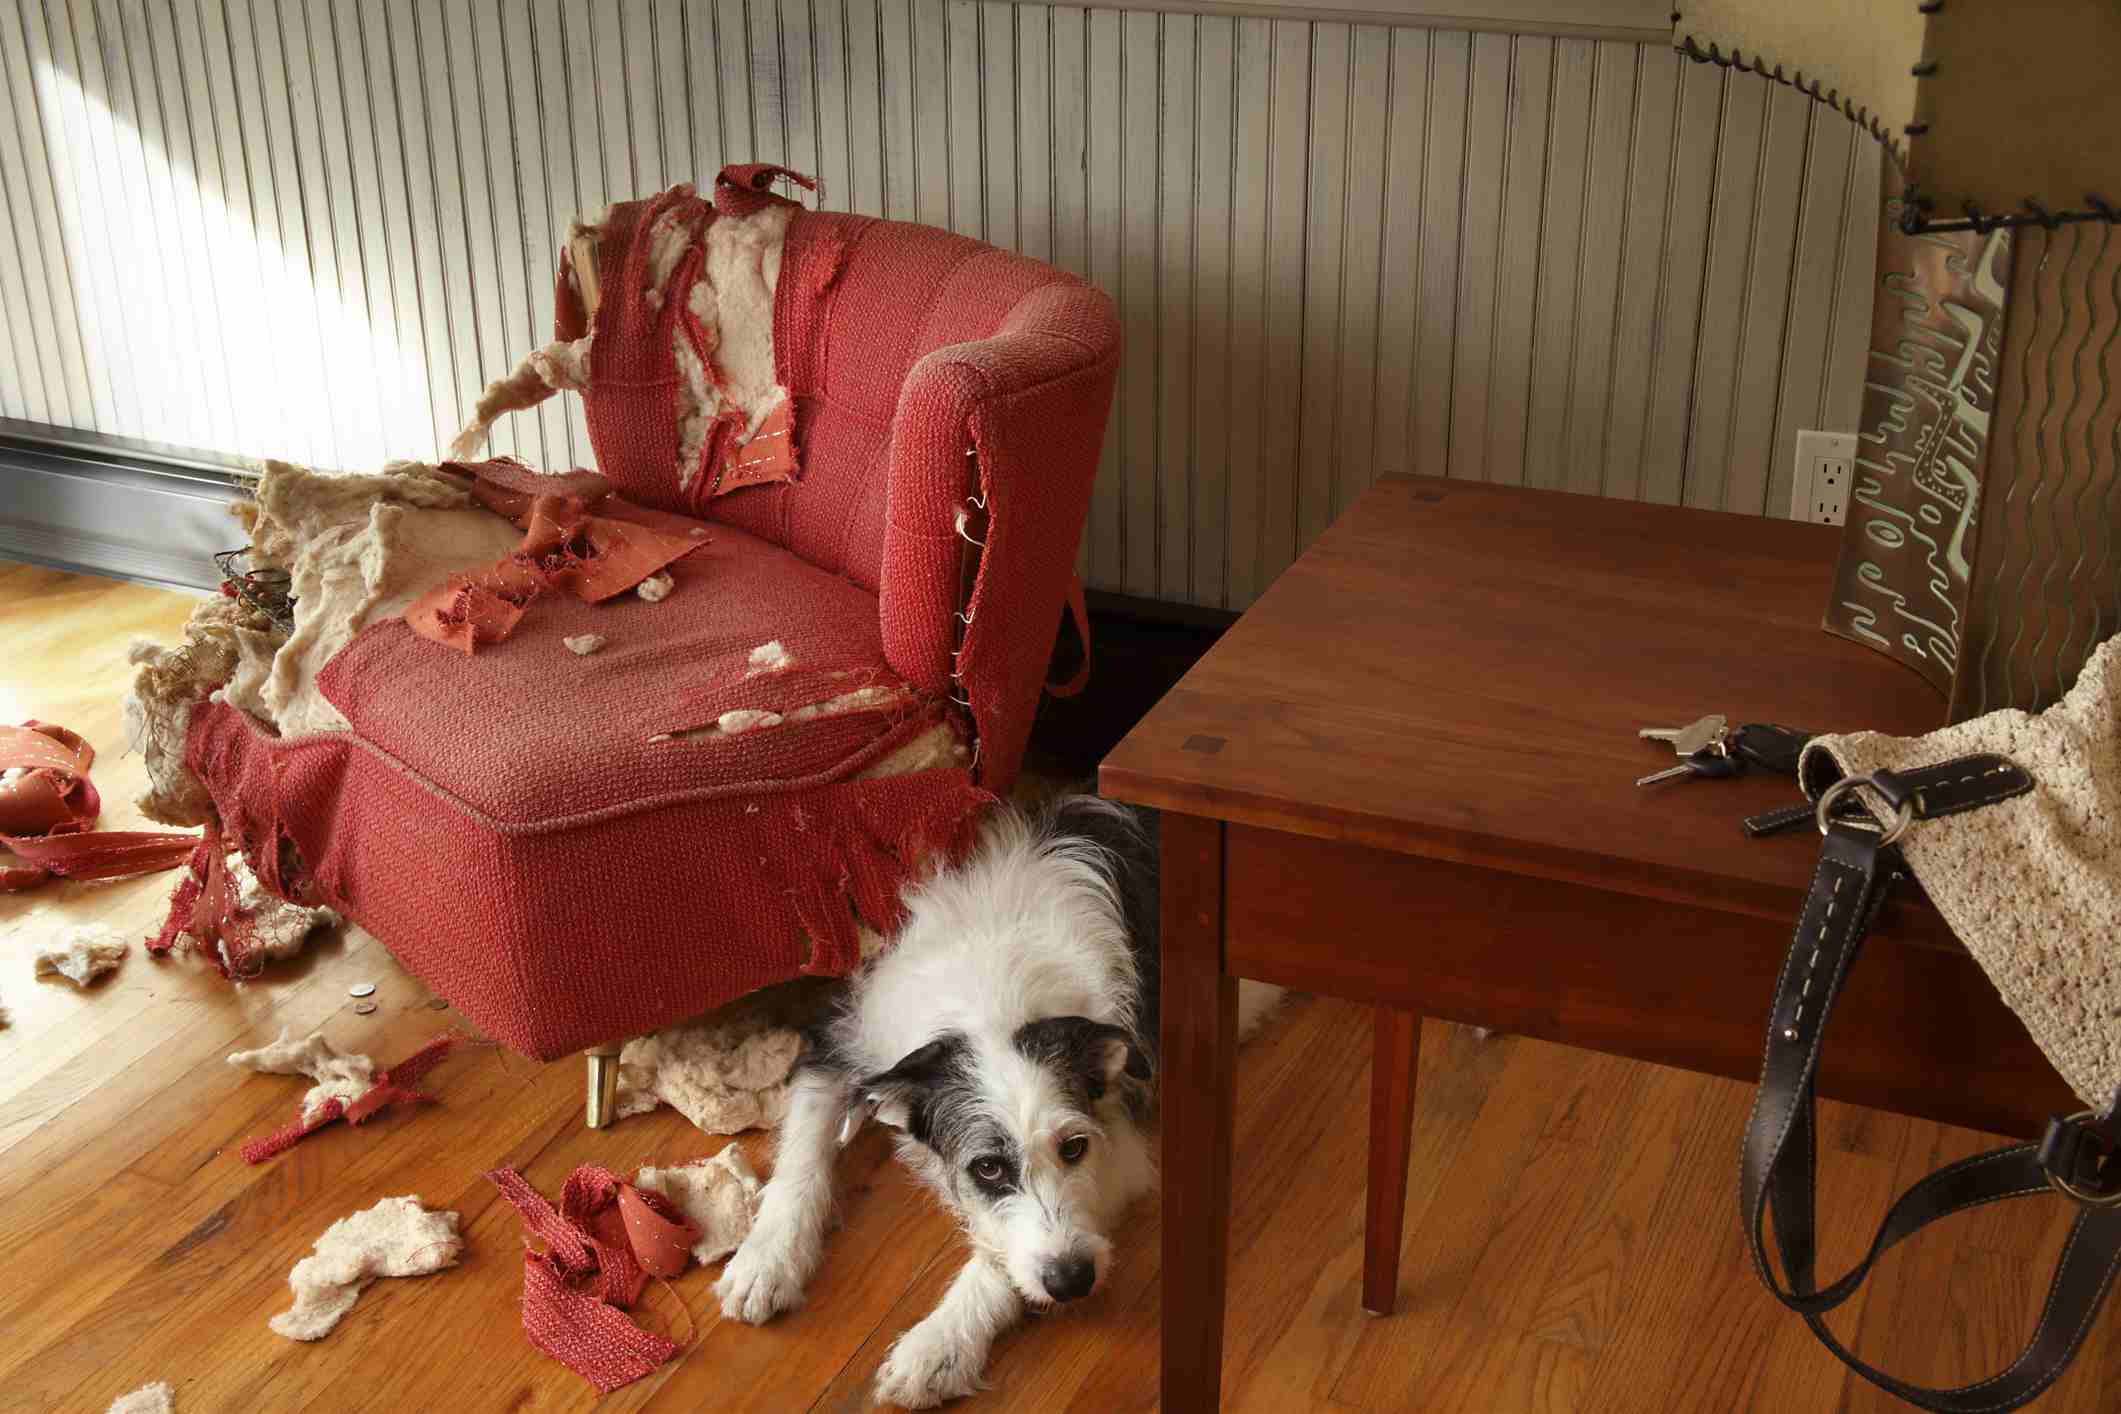 Mischievous dog sitting next torn furniture